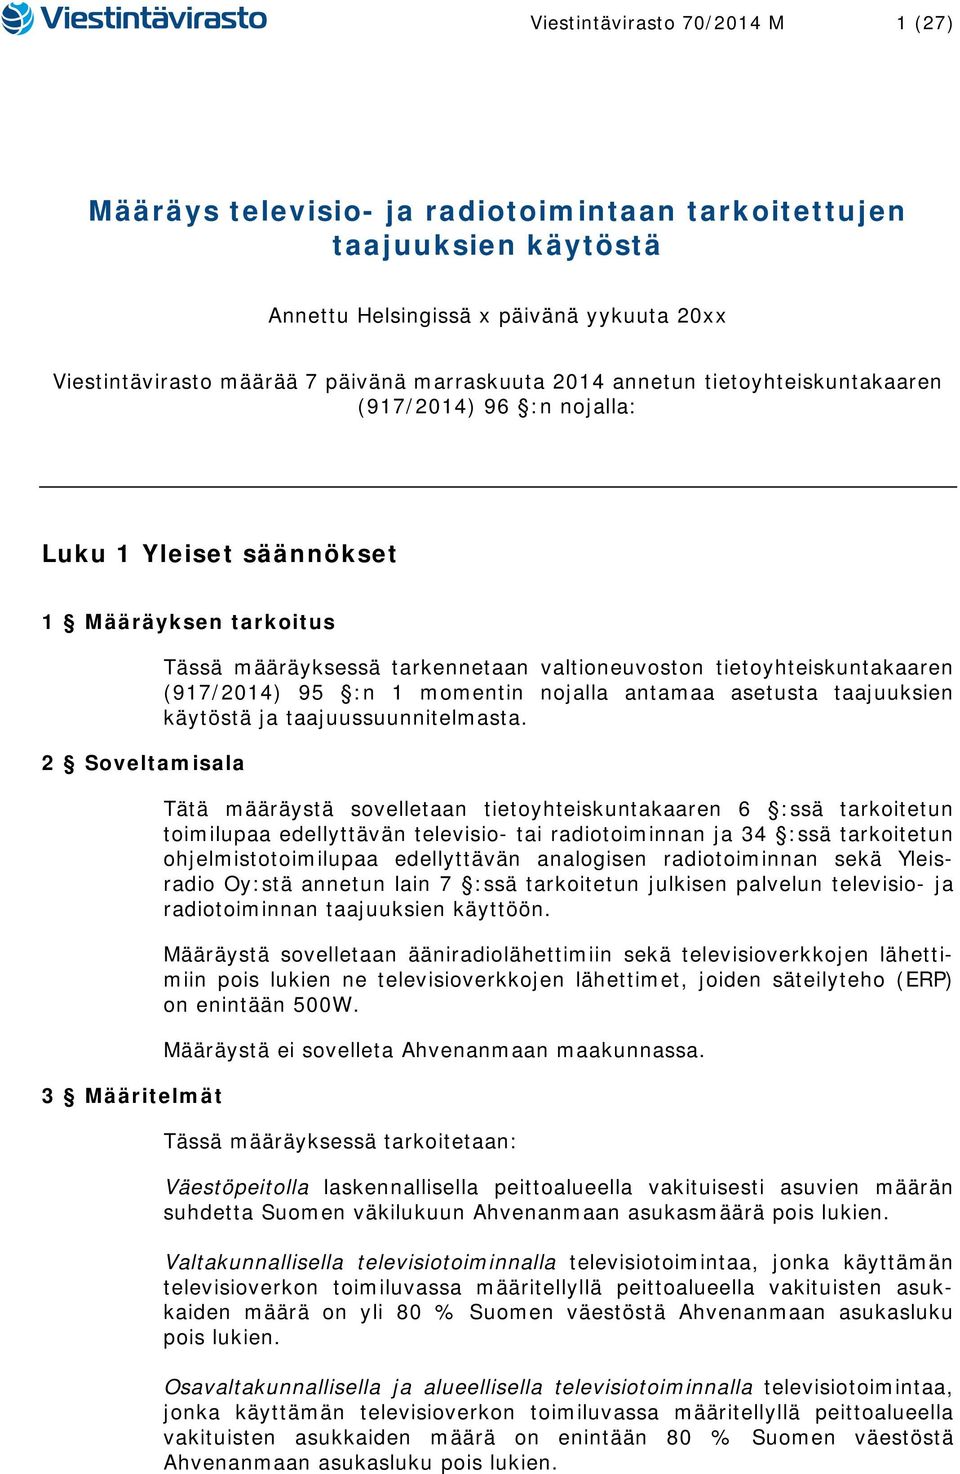 tietoyhteiskuntakaaren (917/2014) 95 :n 1 momentin nojalla antamaa asetusta taajuuksien käytöstä ja taajuussuunnitelmasta.